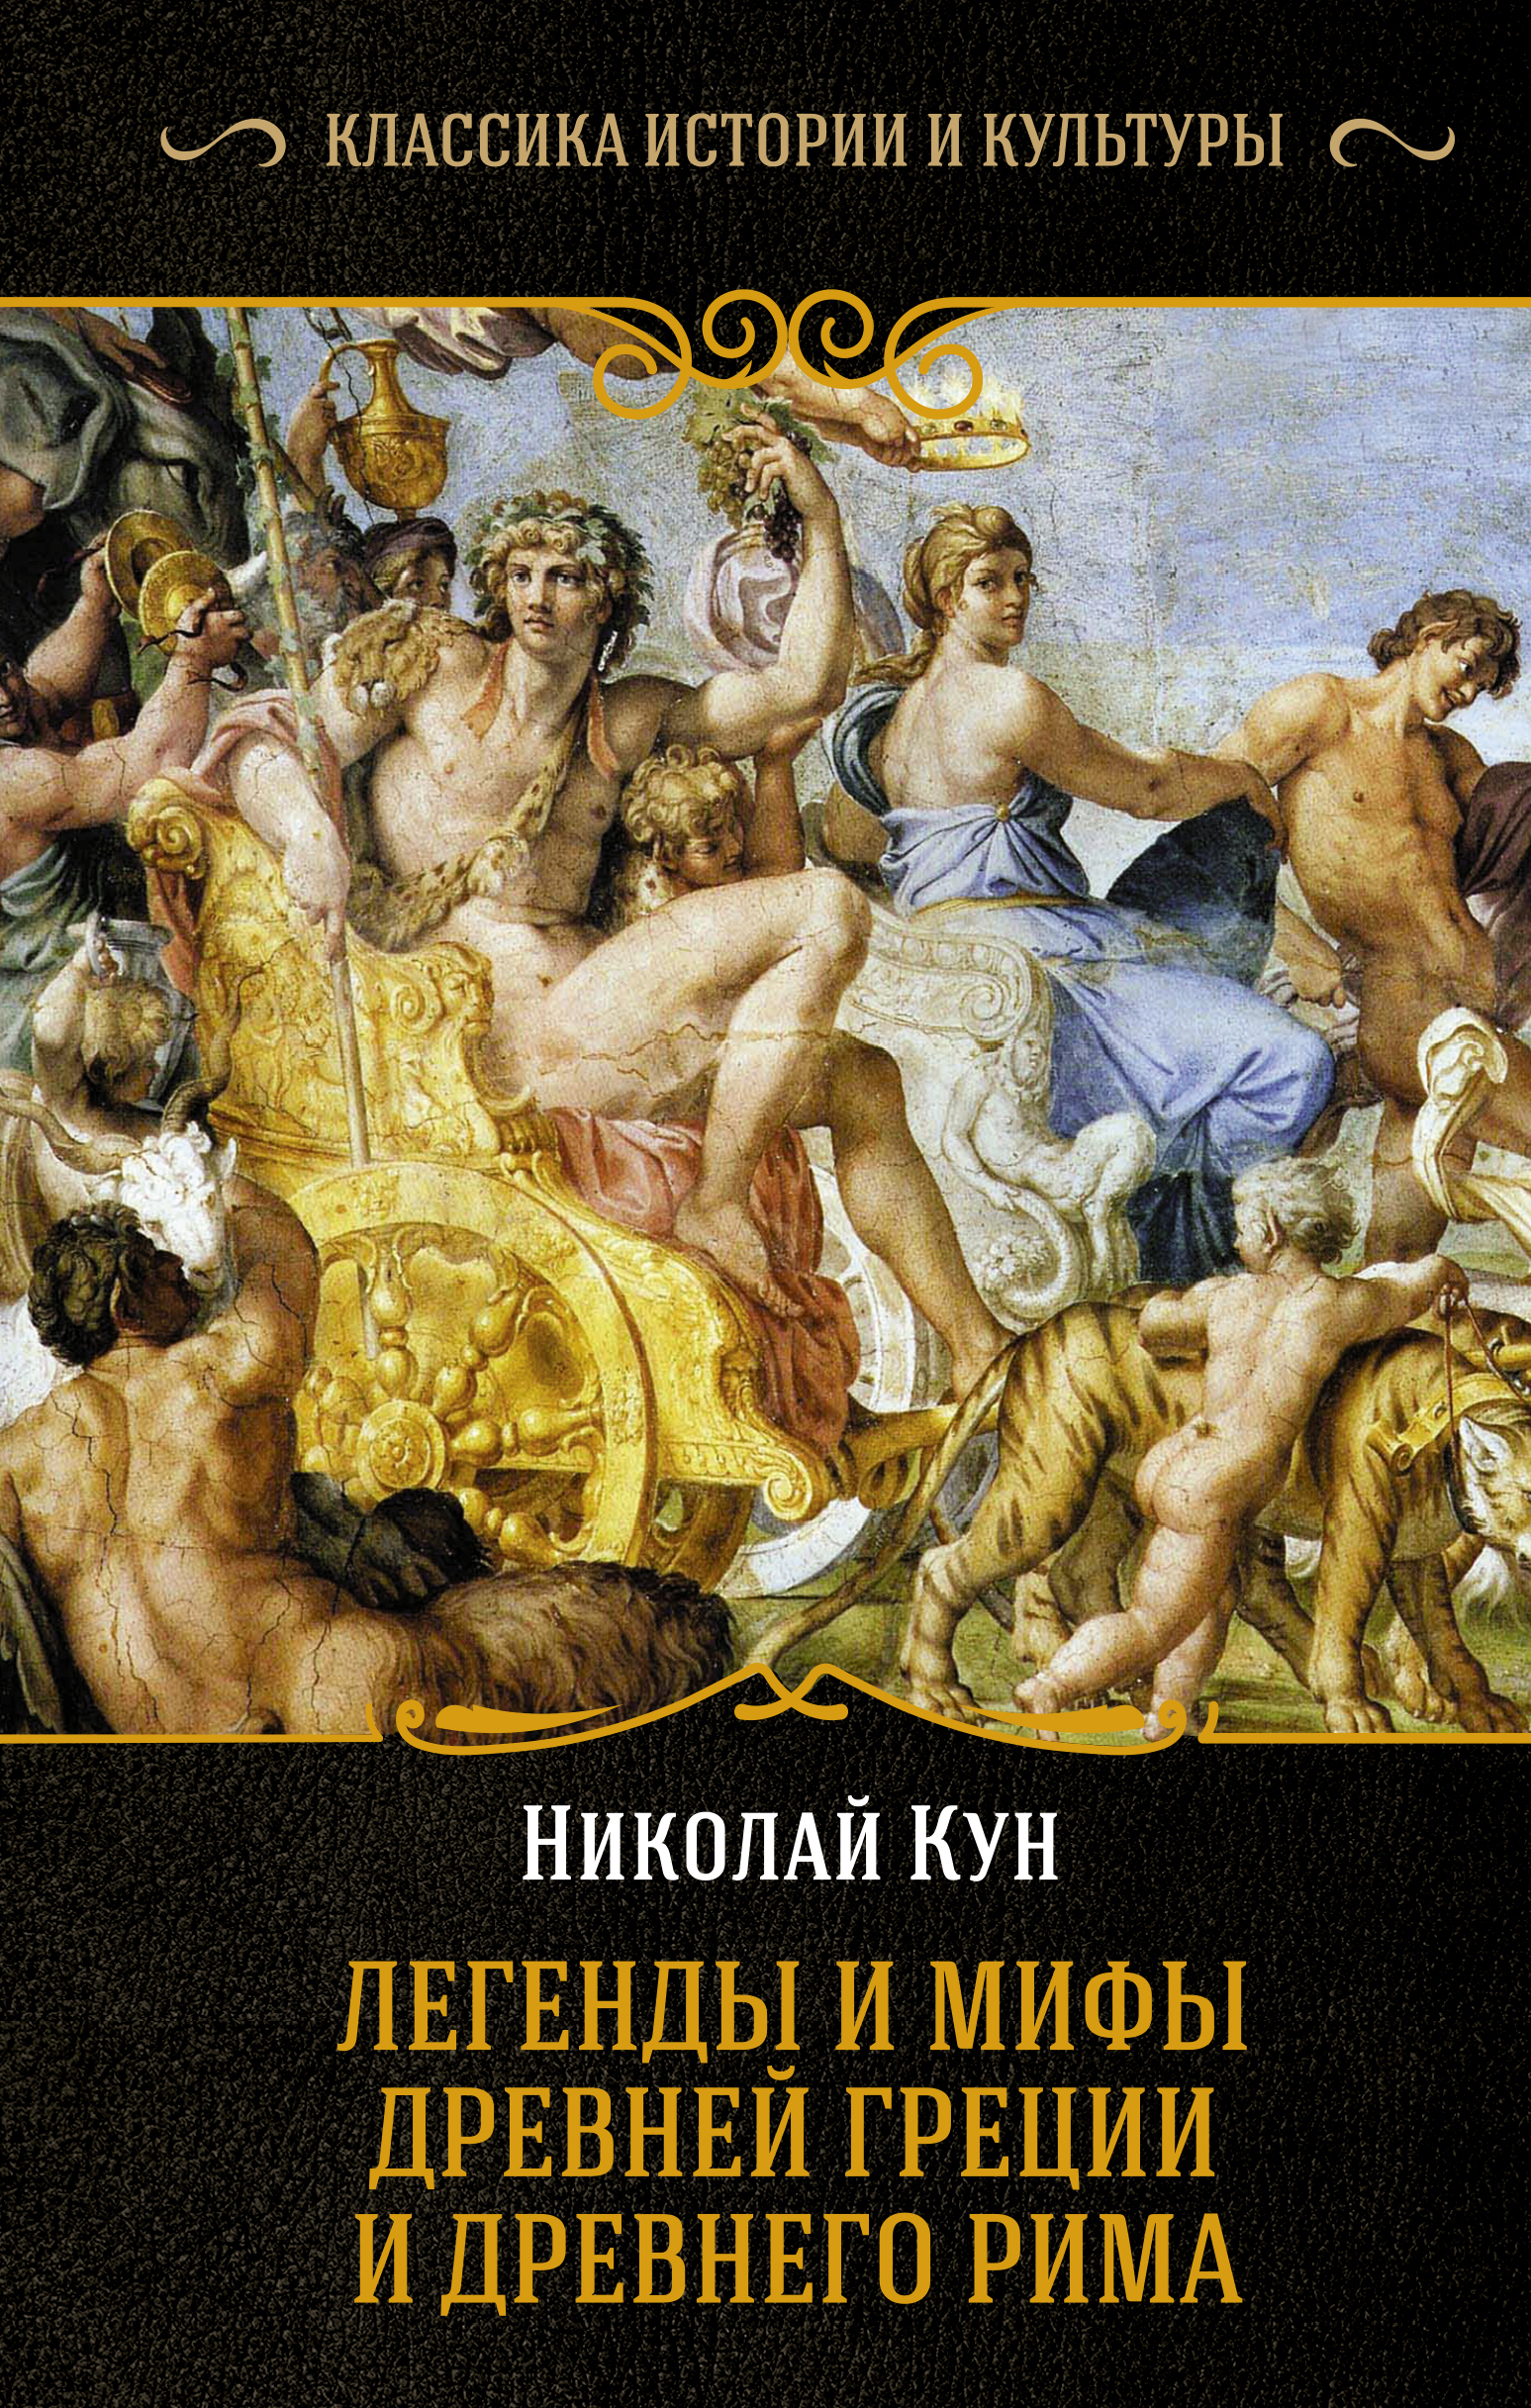 Книги про грецию. Книга легенды и мифы древней Греции н.а кун.